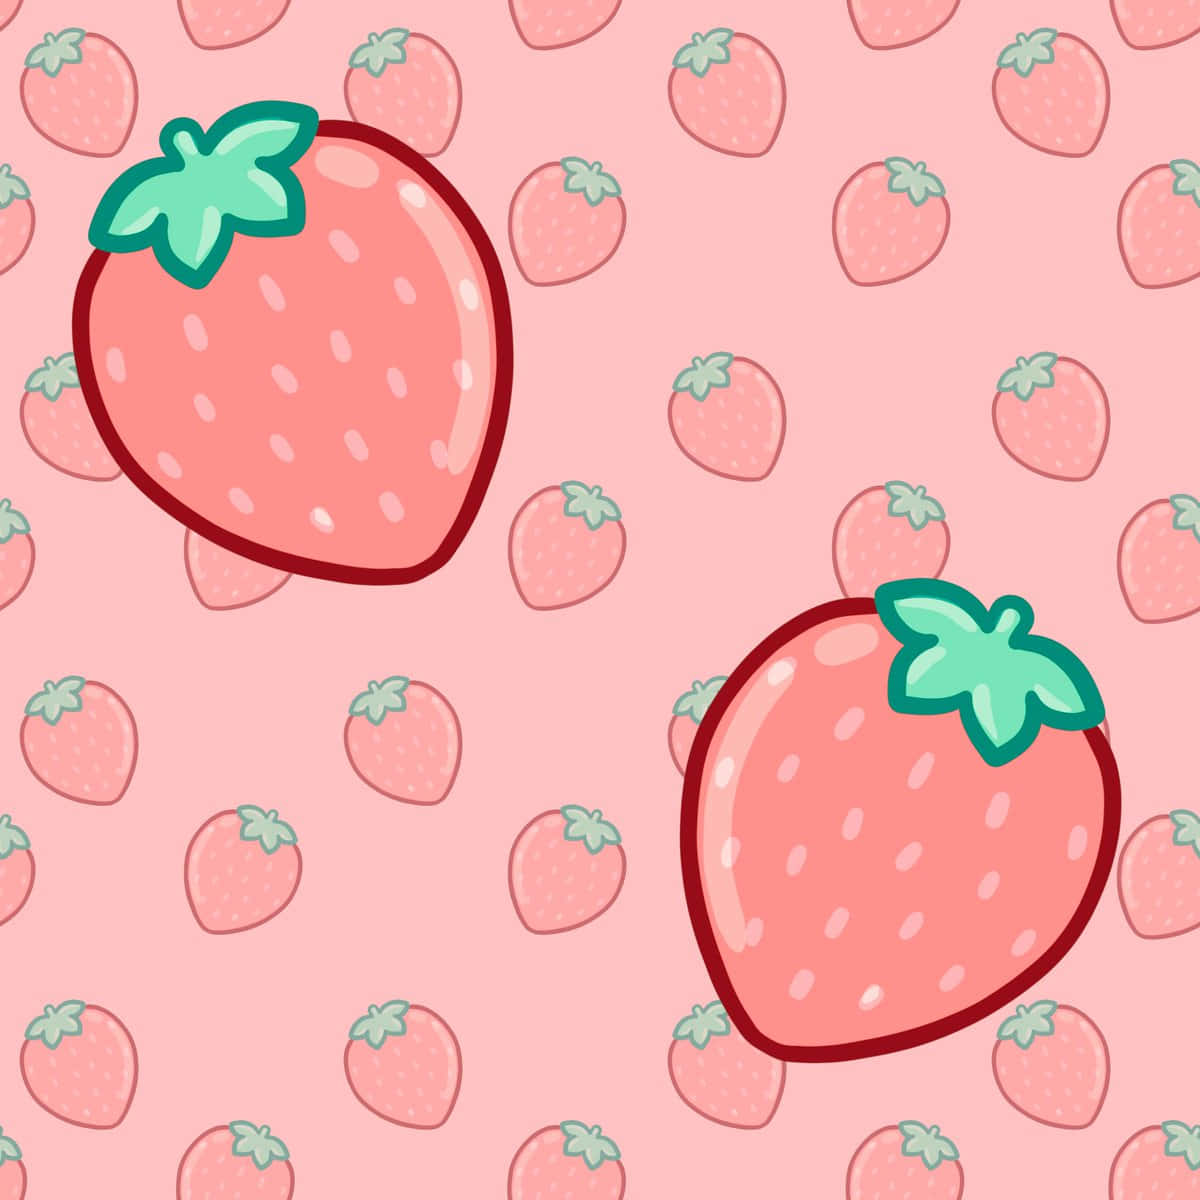 En dejlig pastelfarvet jordbær til at lysne din dag. Wallpaper